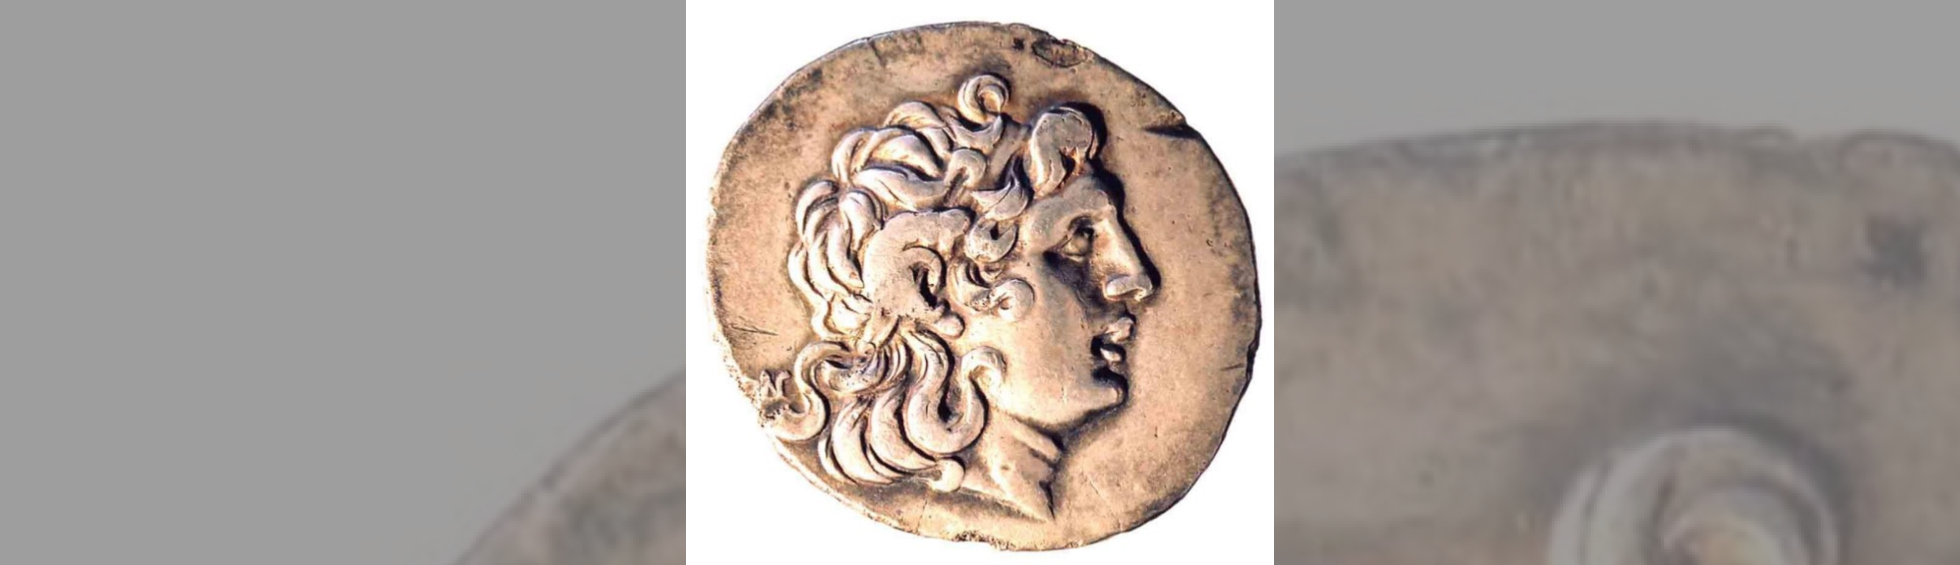 pièce de monnaie antique avec le buste d'Alexandre le Grand - IVème siècle av. J-C